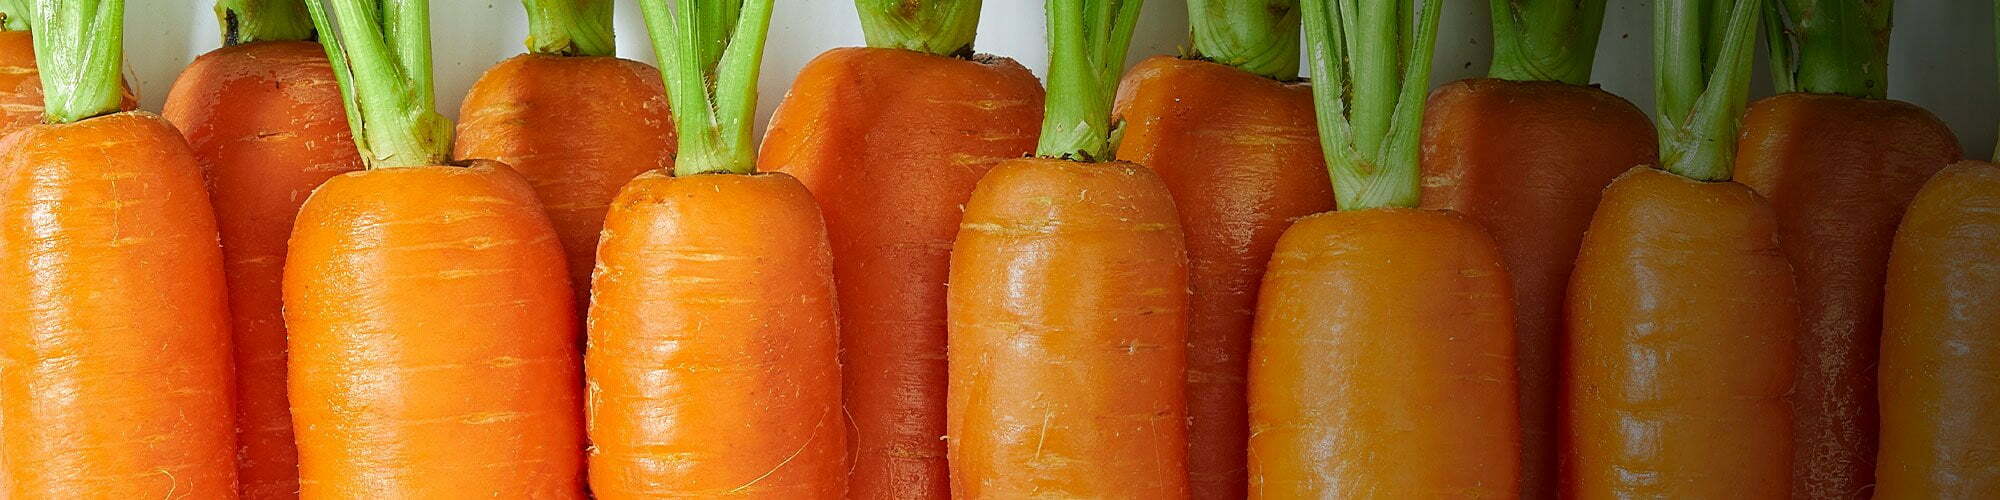 Carrot stems